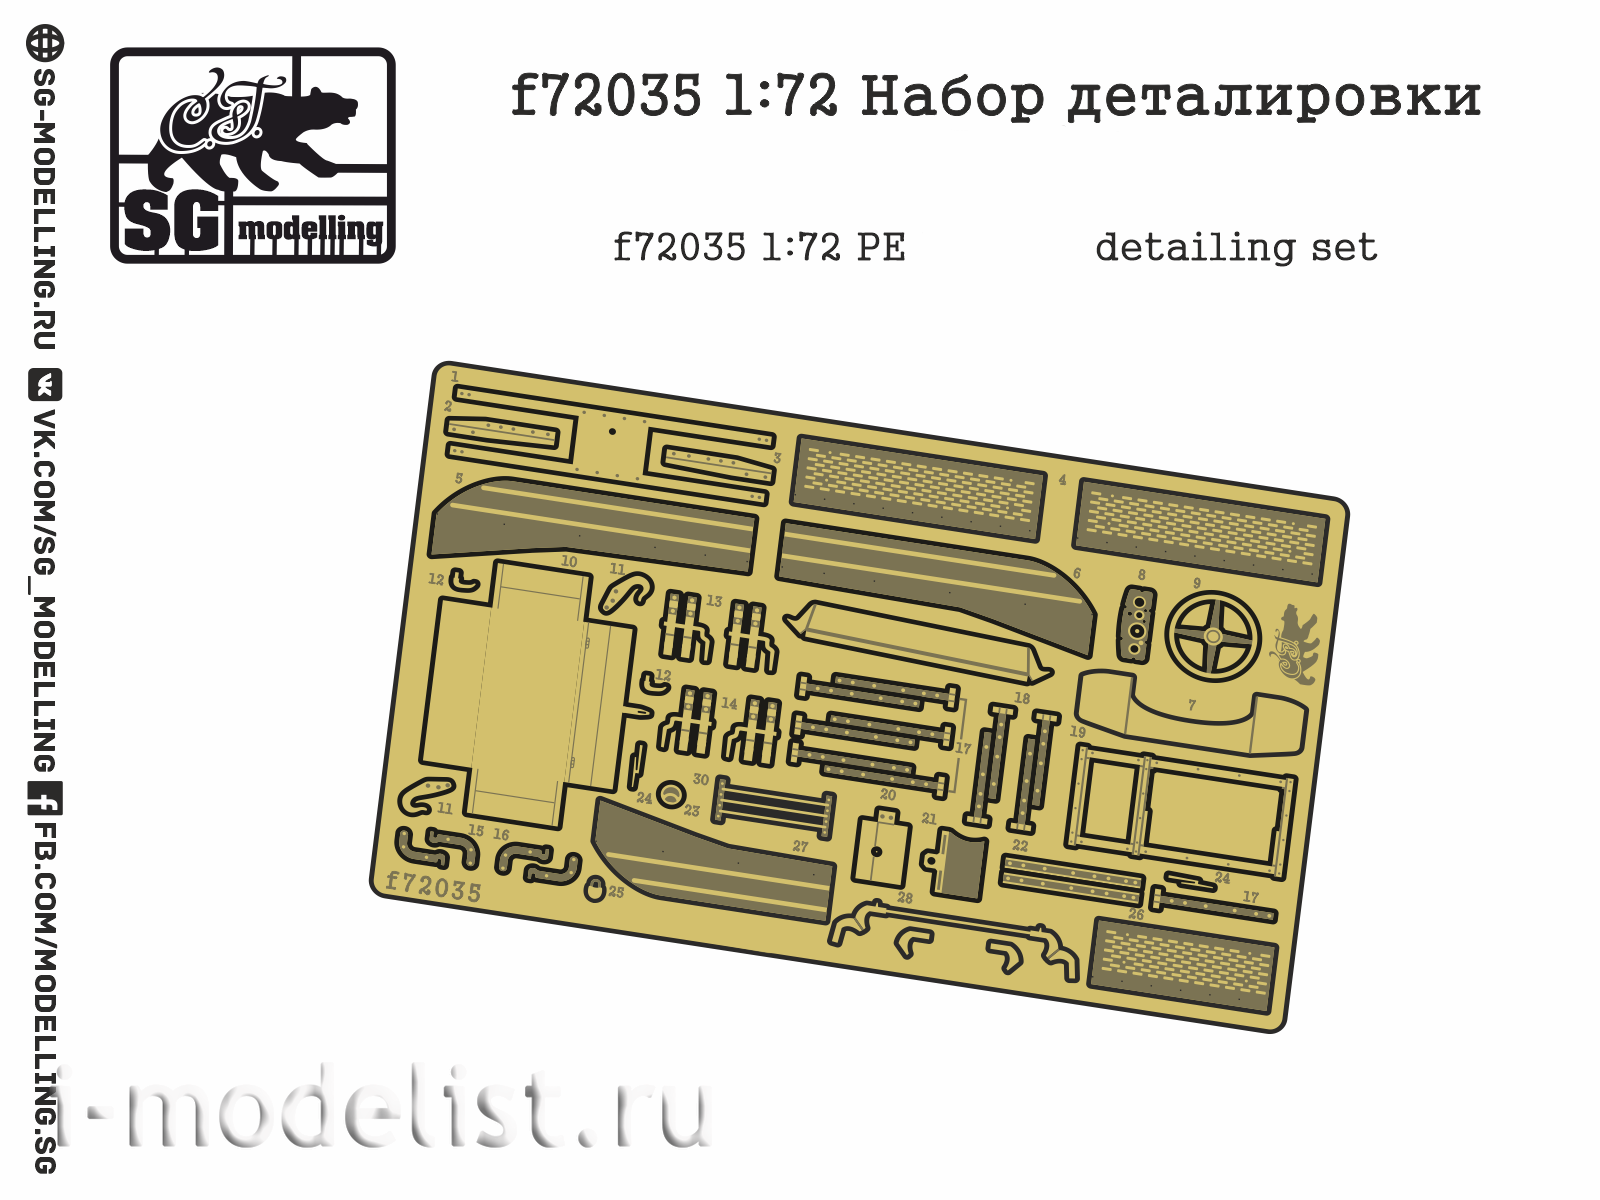 F72035 SG modeling 1/72 detail kit Z&S-5/6 (FTD)